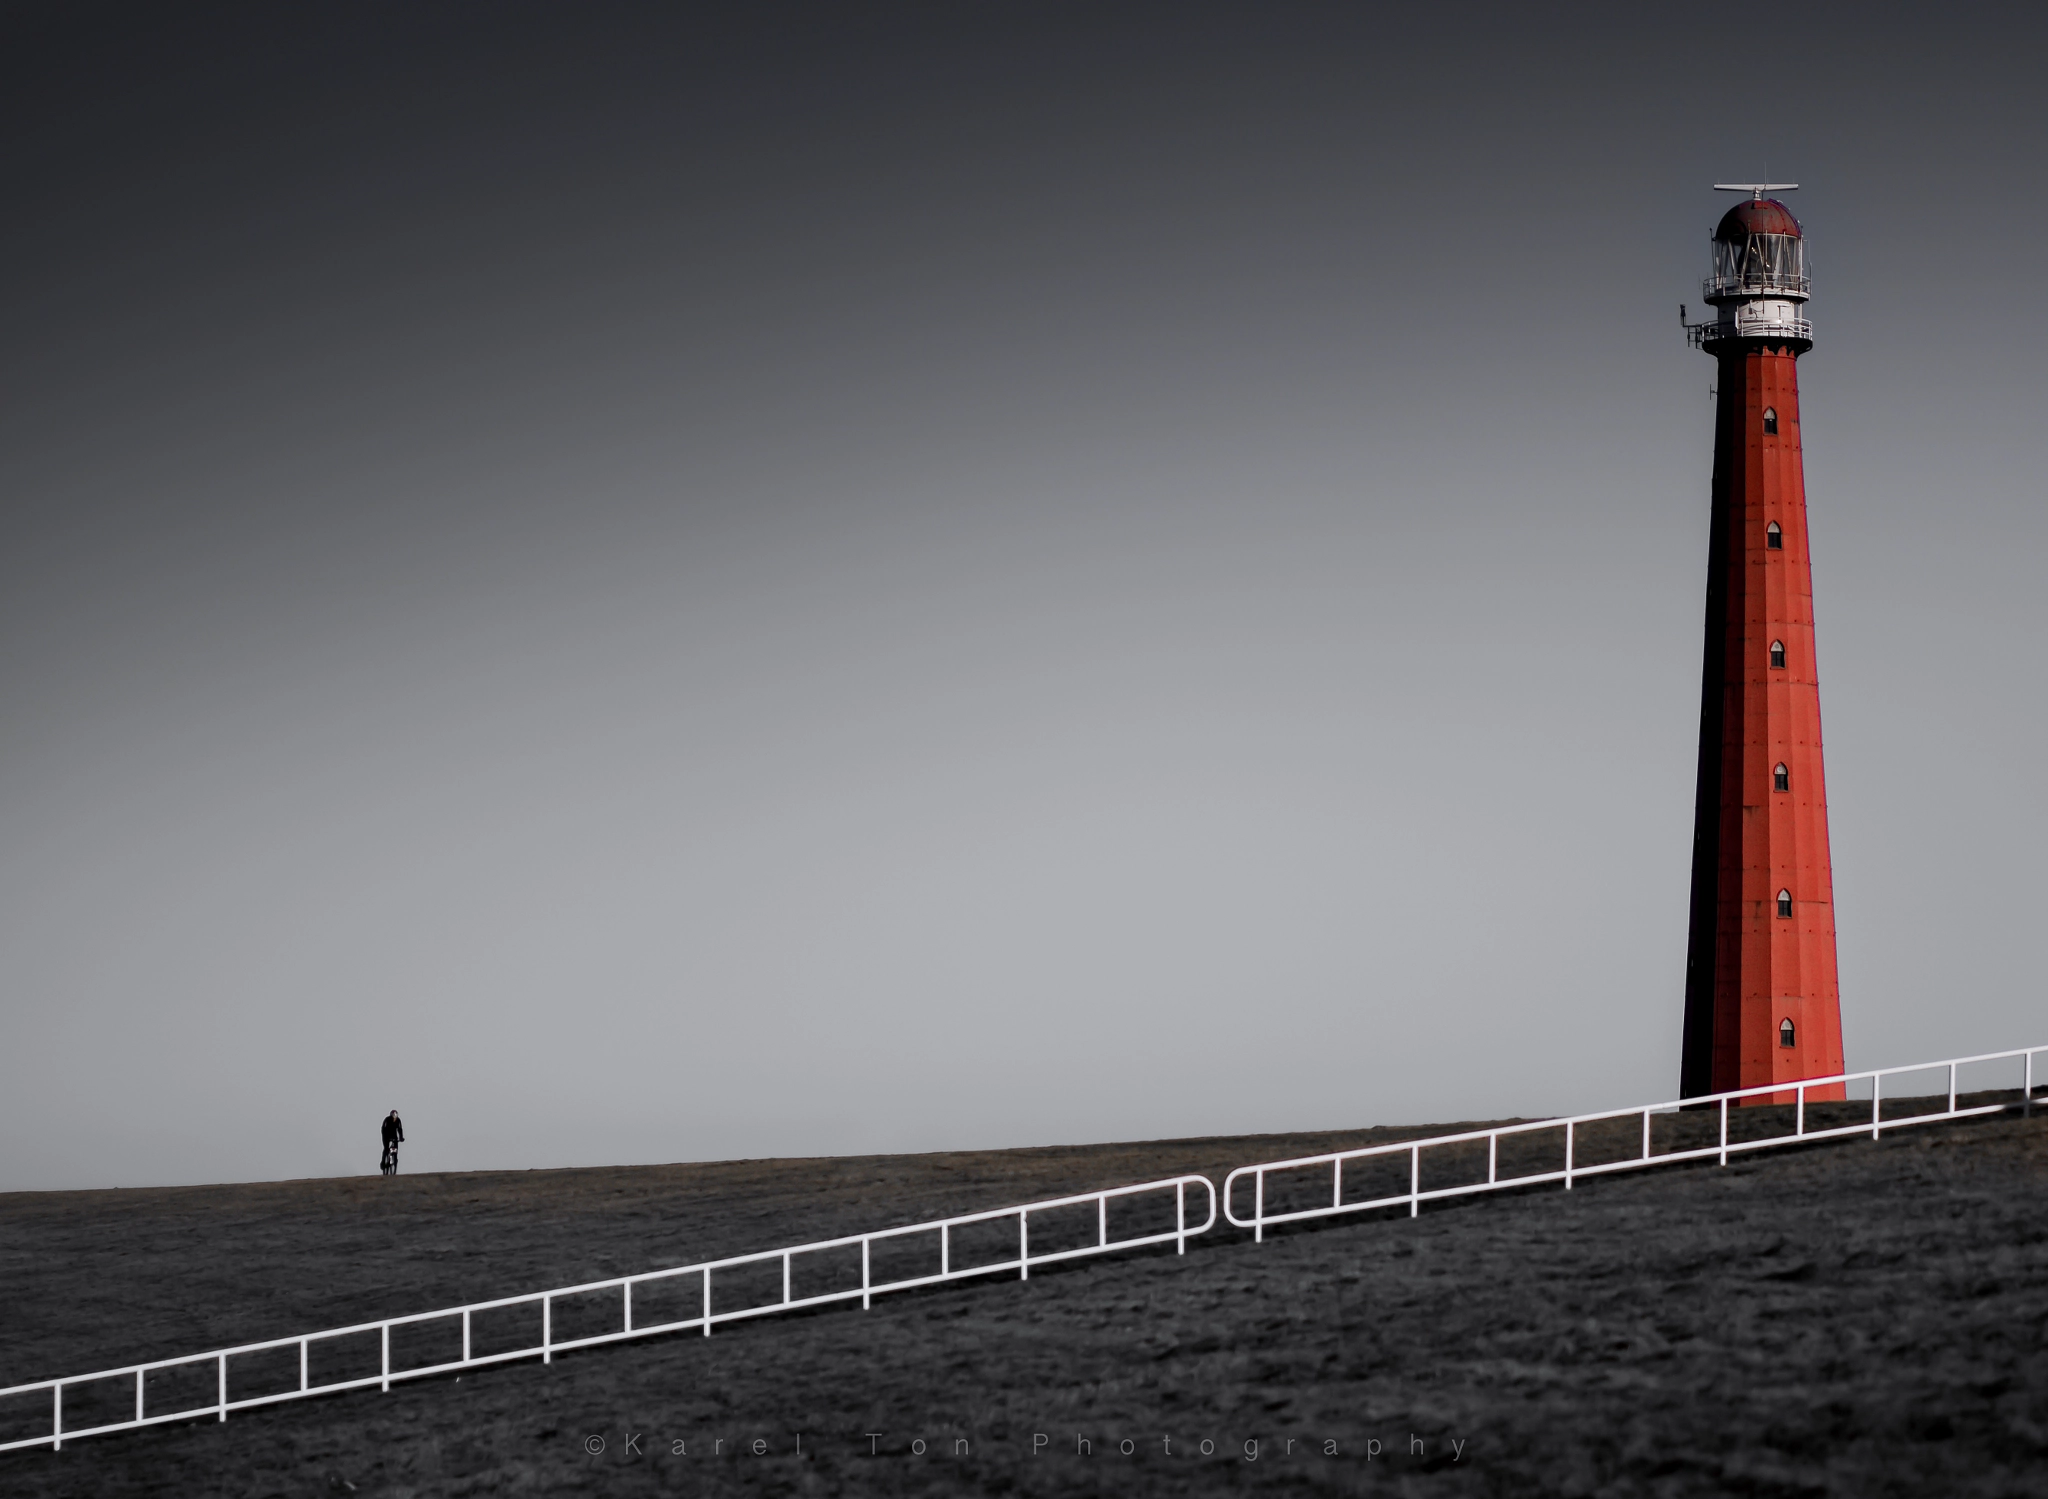 Canon EOS 760D (EOS Rebel T6s / EOS 8000D) sample photo. Lighthouse, den helder, holland photography